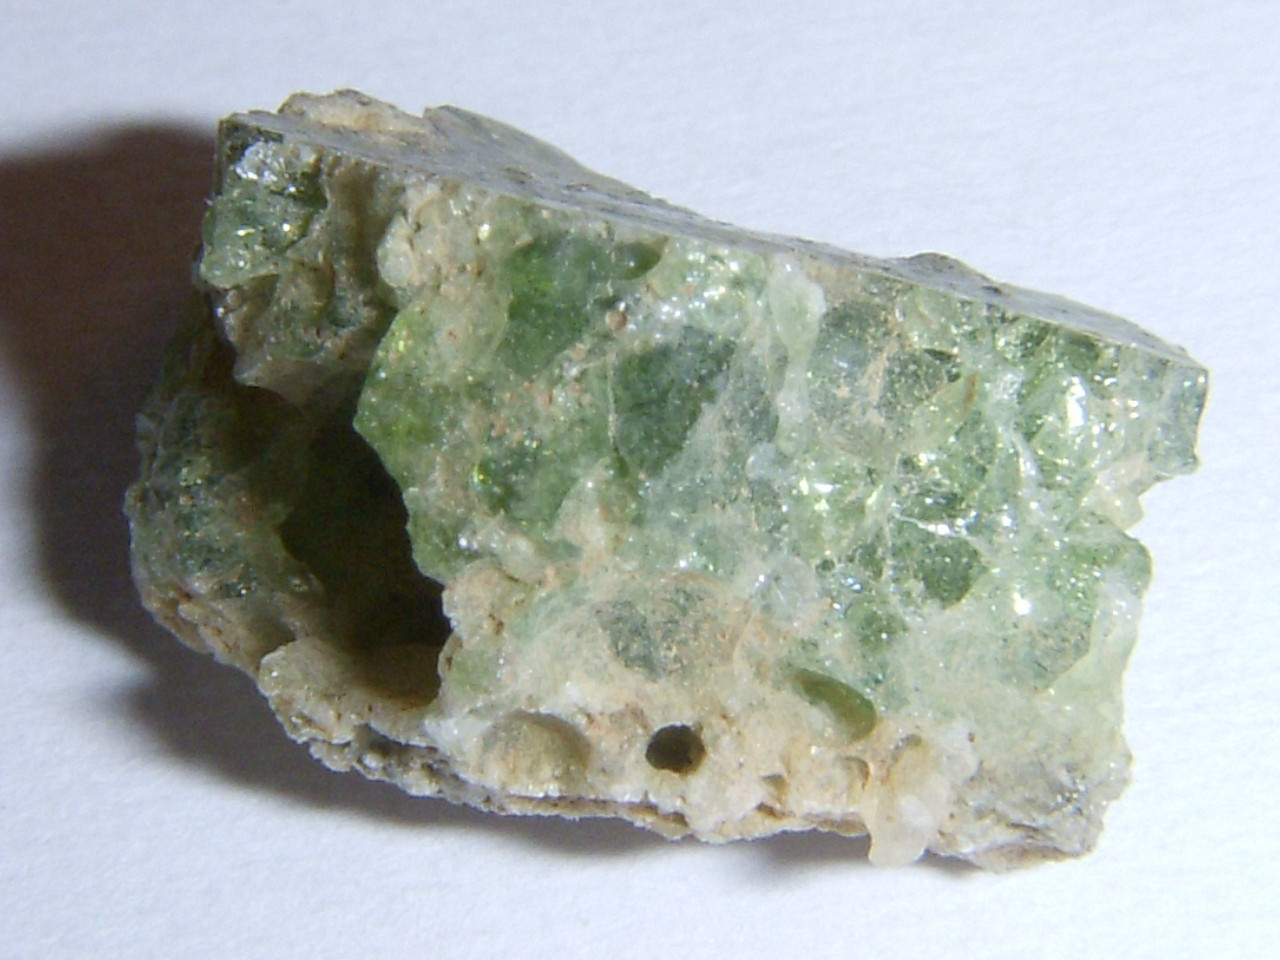 Тринитит&nbsp;— новый минерал, сформированный в&nbsp;процессе первого ядерного взрыва Trinity в&nbsp;1945&nbsp;году // Shaddack, from Wikimedia Commons